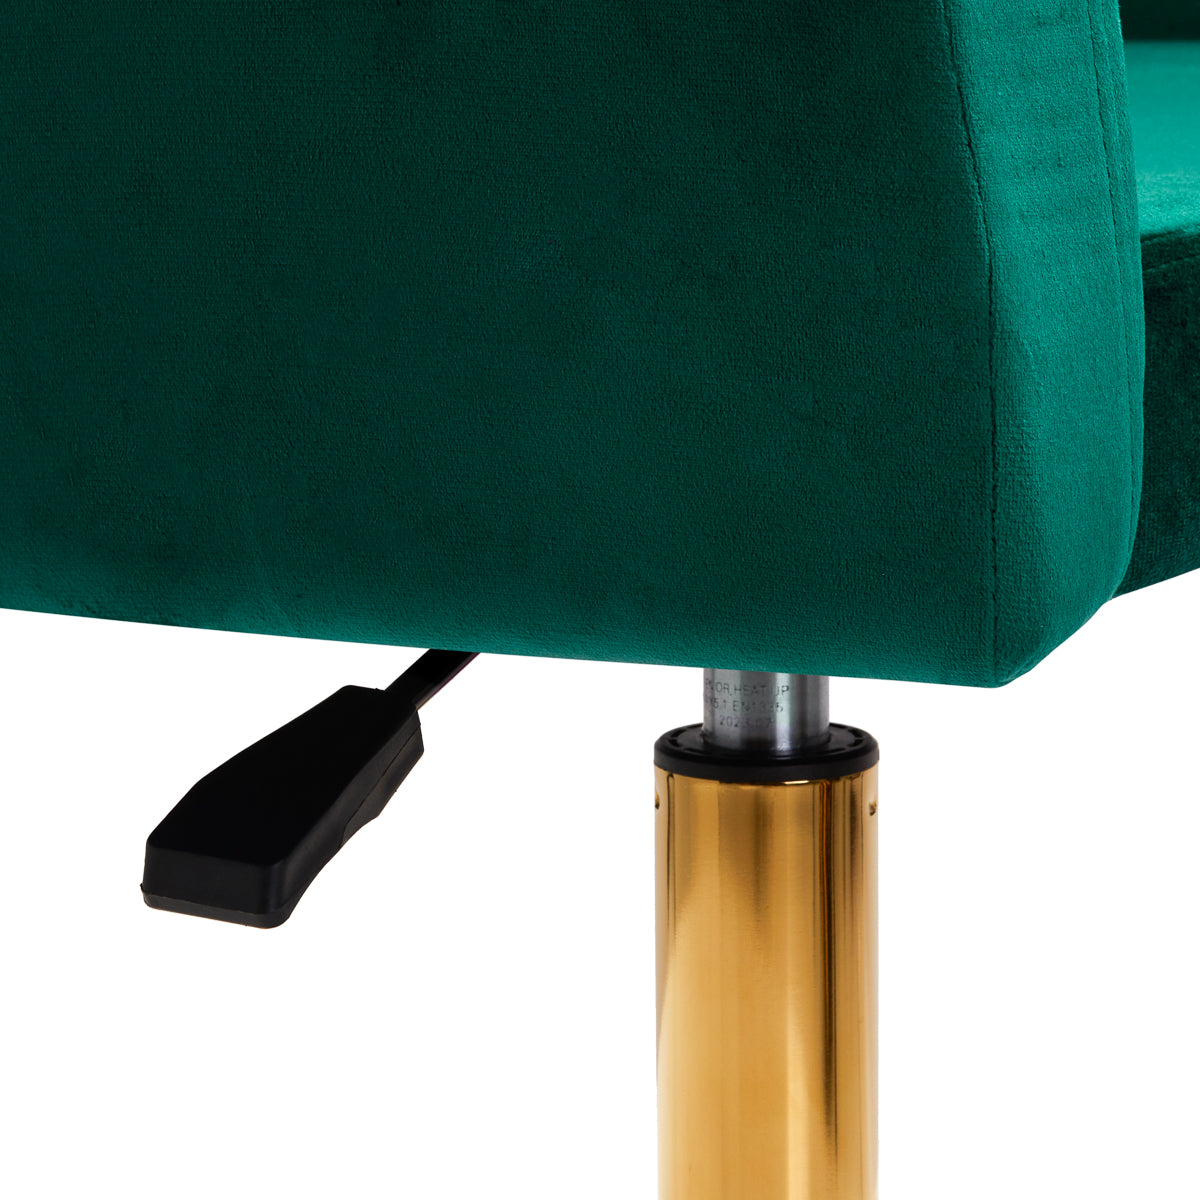 4Rico Swivel Chair QS-BL14G Green